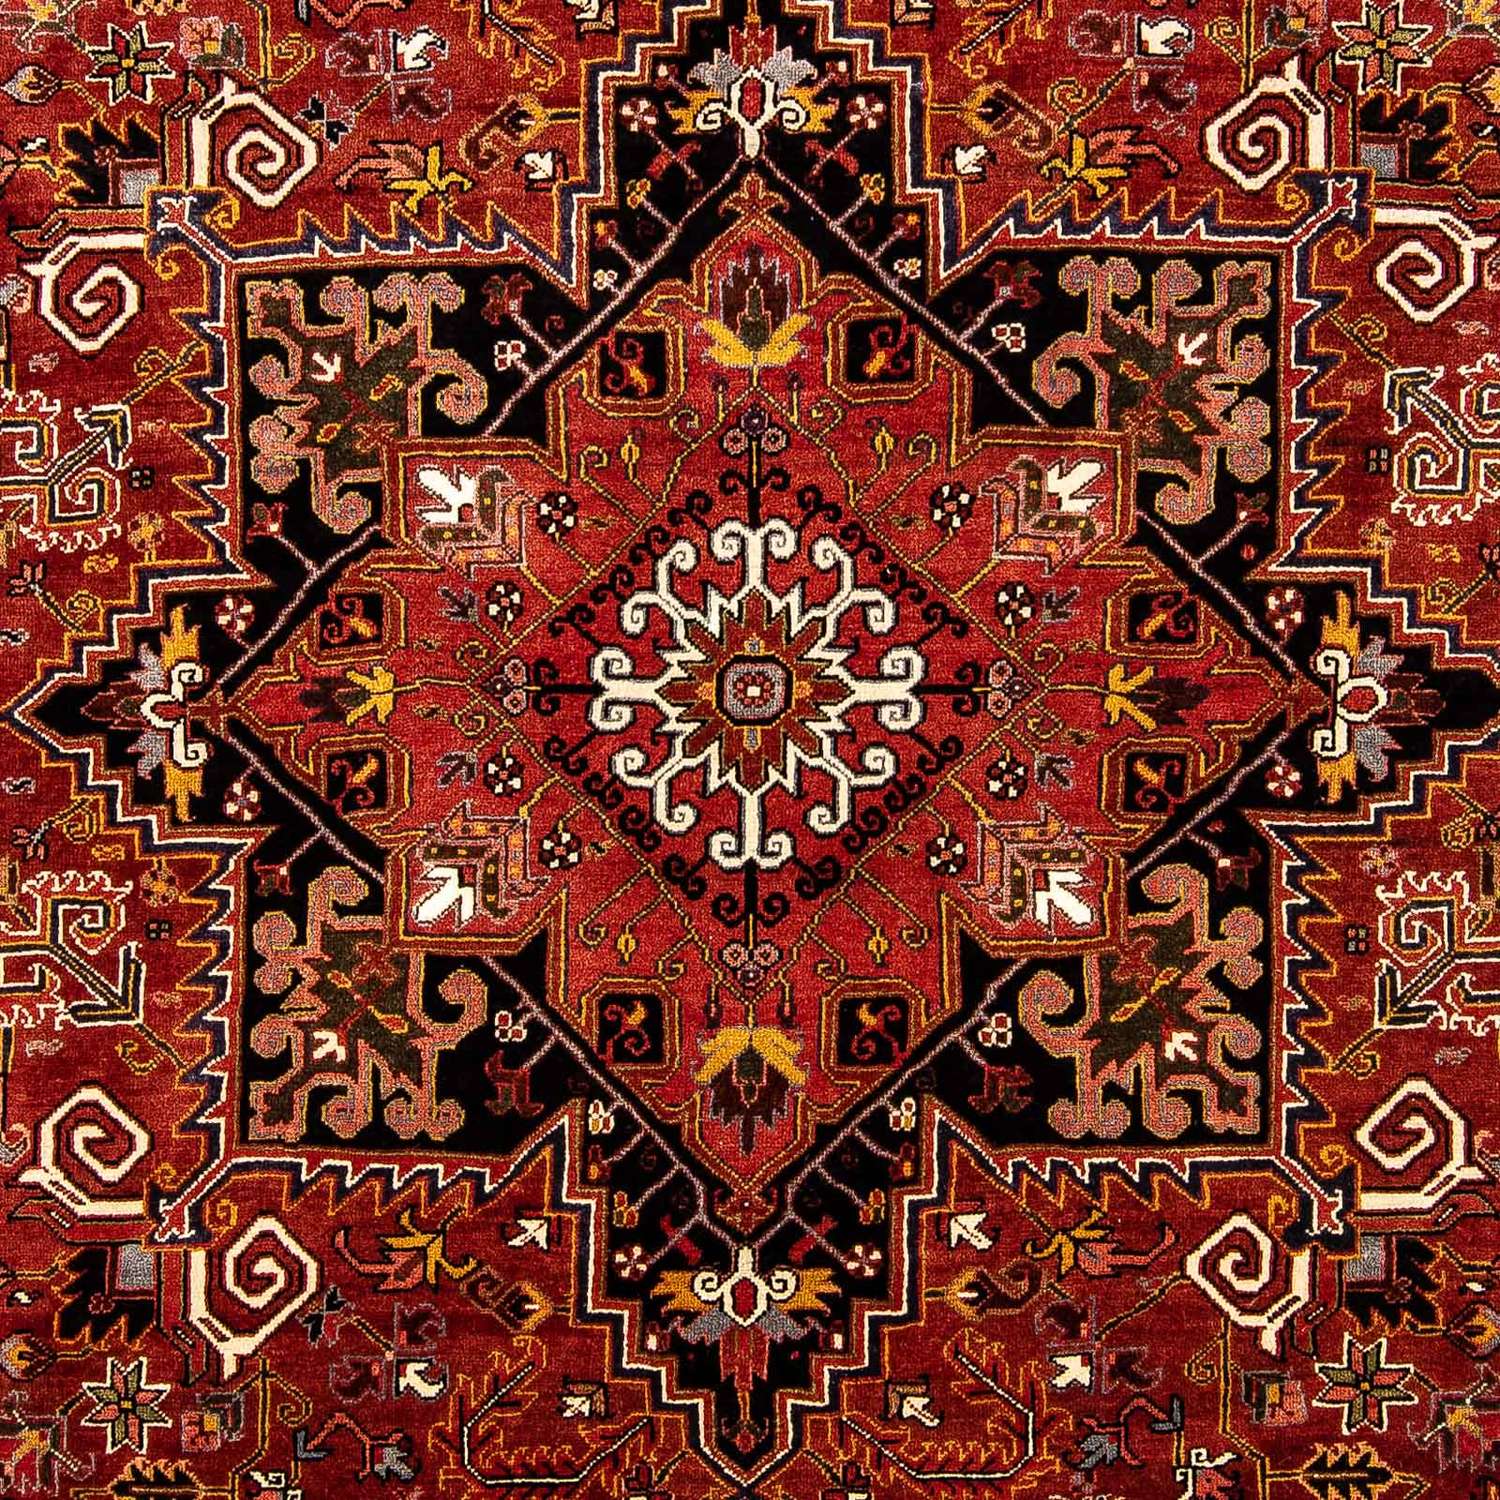 Perski dywan - Nomadyczny - 377 x 290 cm - rdza